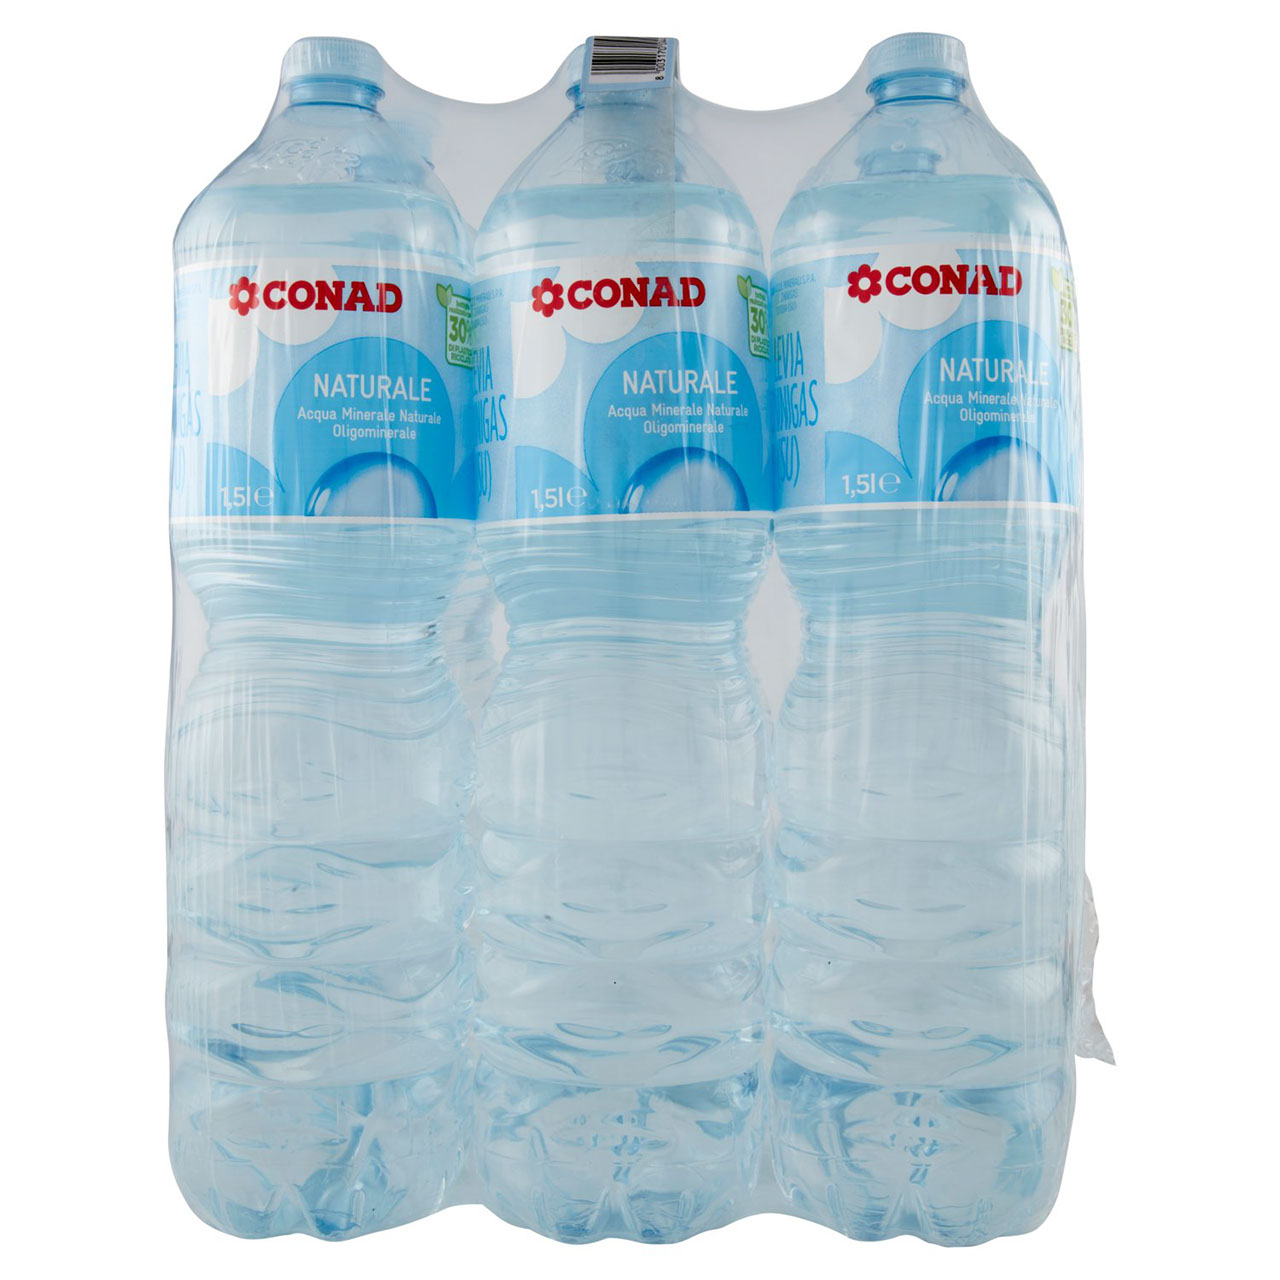 CONAD Naturale Acqua Minerale Naturale Oligominerale Levia 6 x 1,5 l